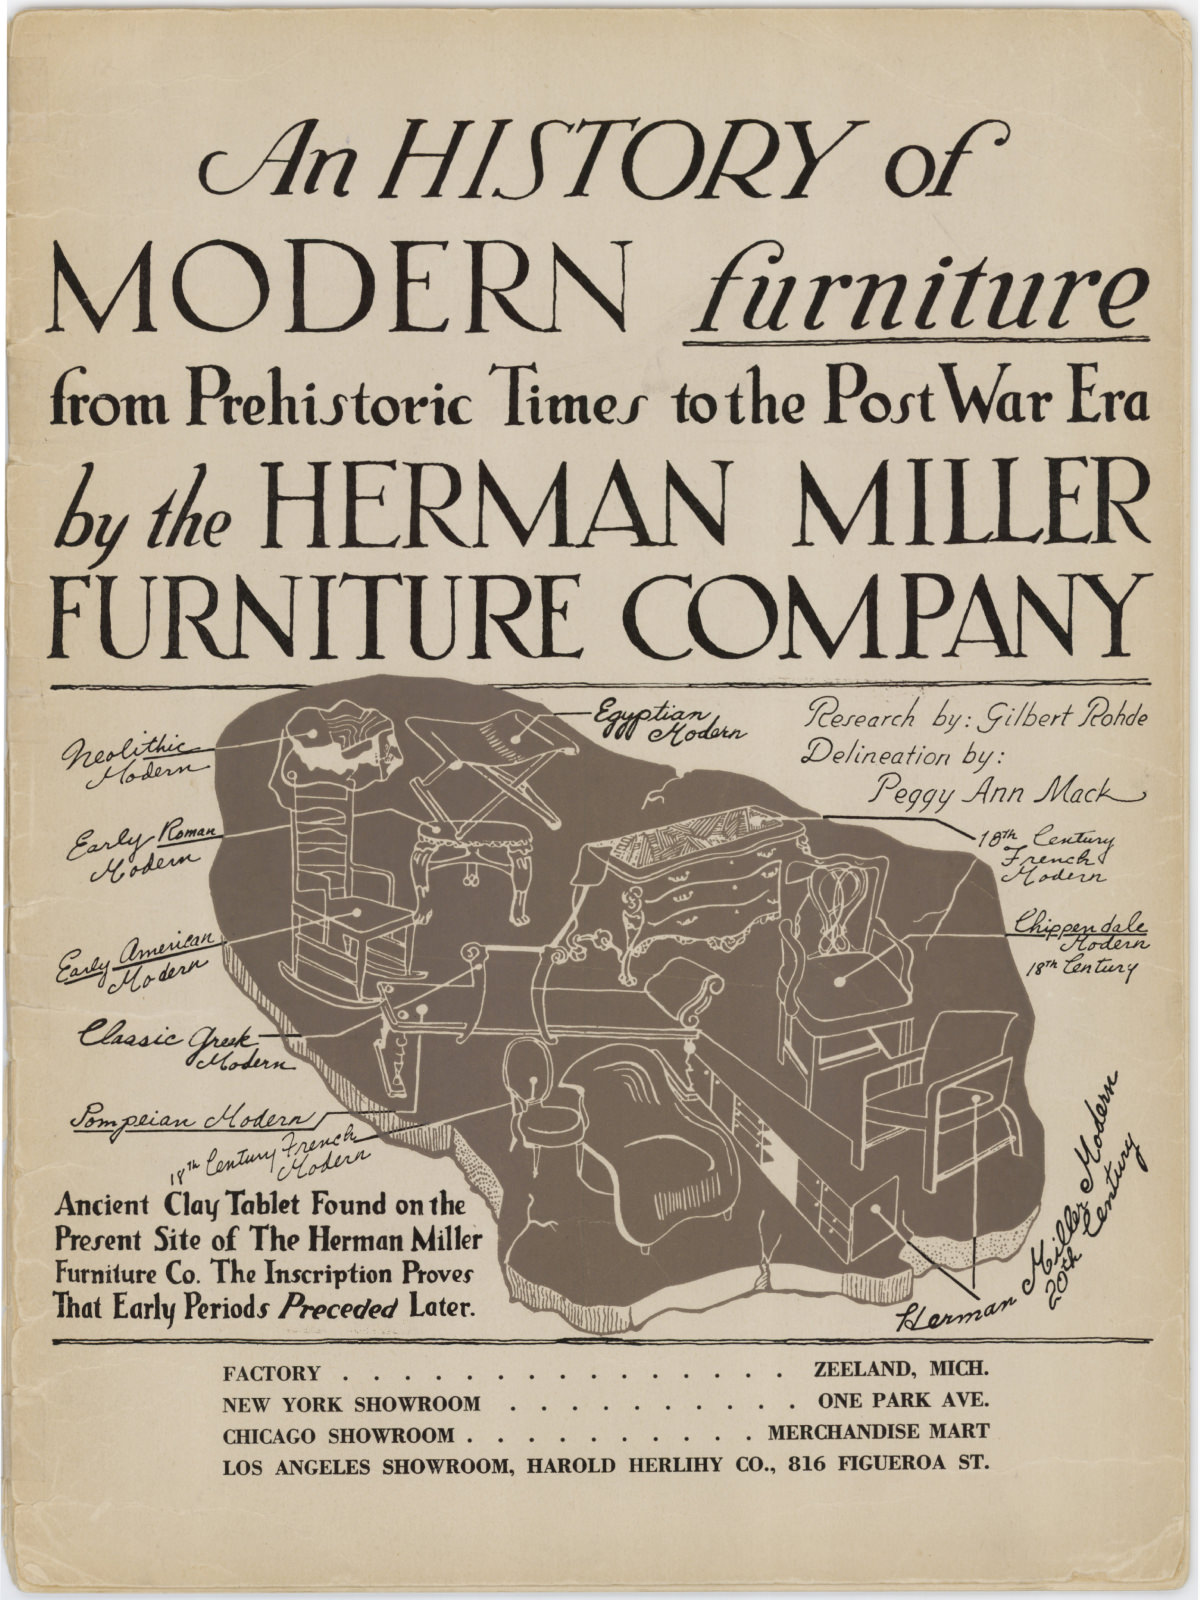 Folheto promocional da Herman Miller com ilustrações em preto e branco de réplicas de móveis antigos junto a móveis modernos. O texto defende o design moderno.